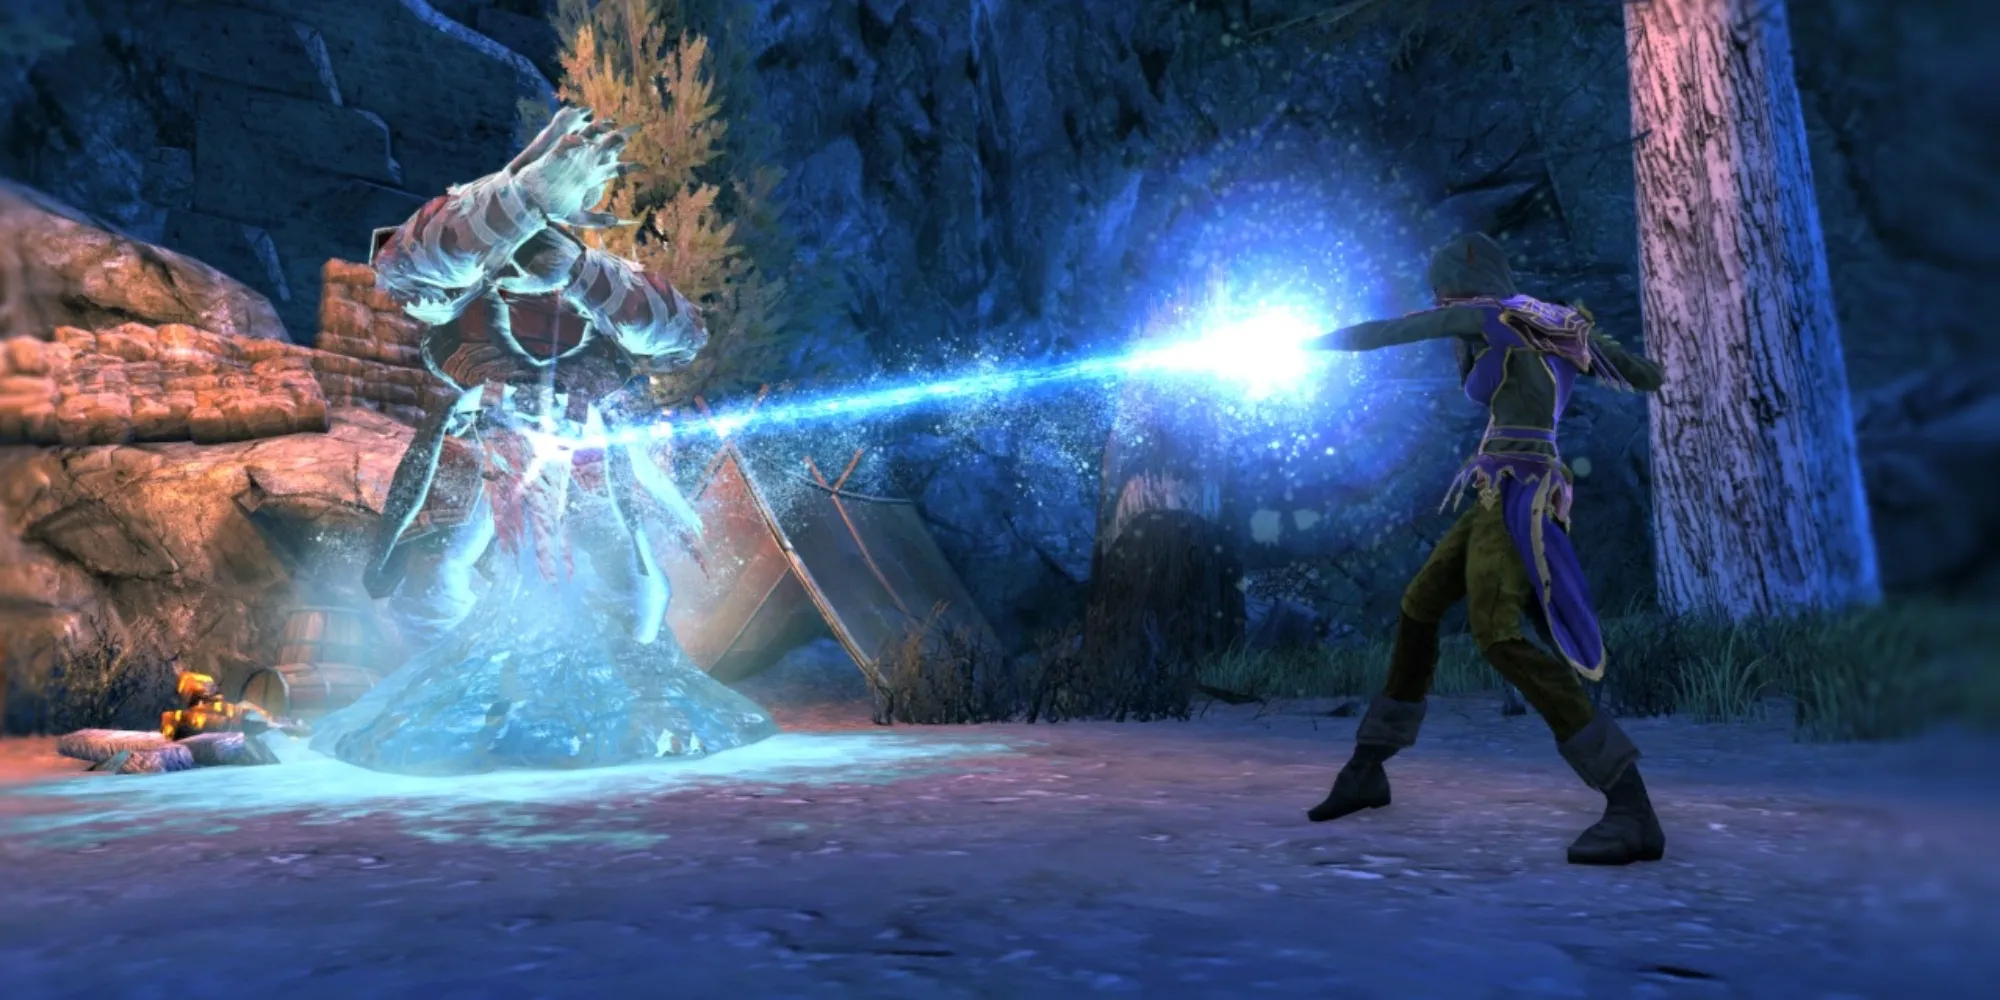 RPG gratuit sur Steam - Neverwinter - Joueur utilisant une explosion de glace sur un ennemi